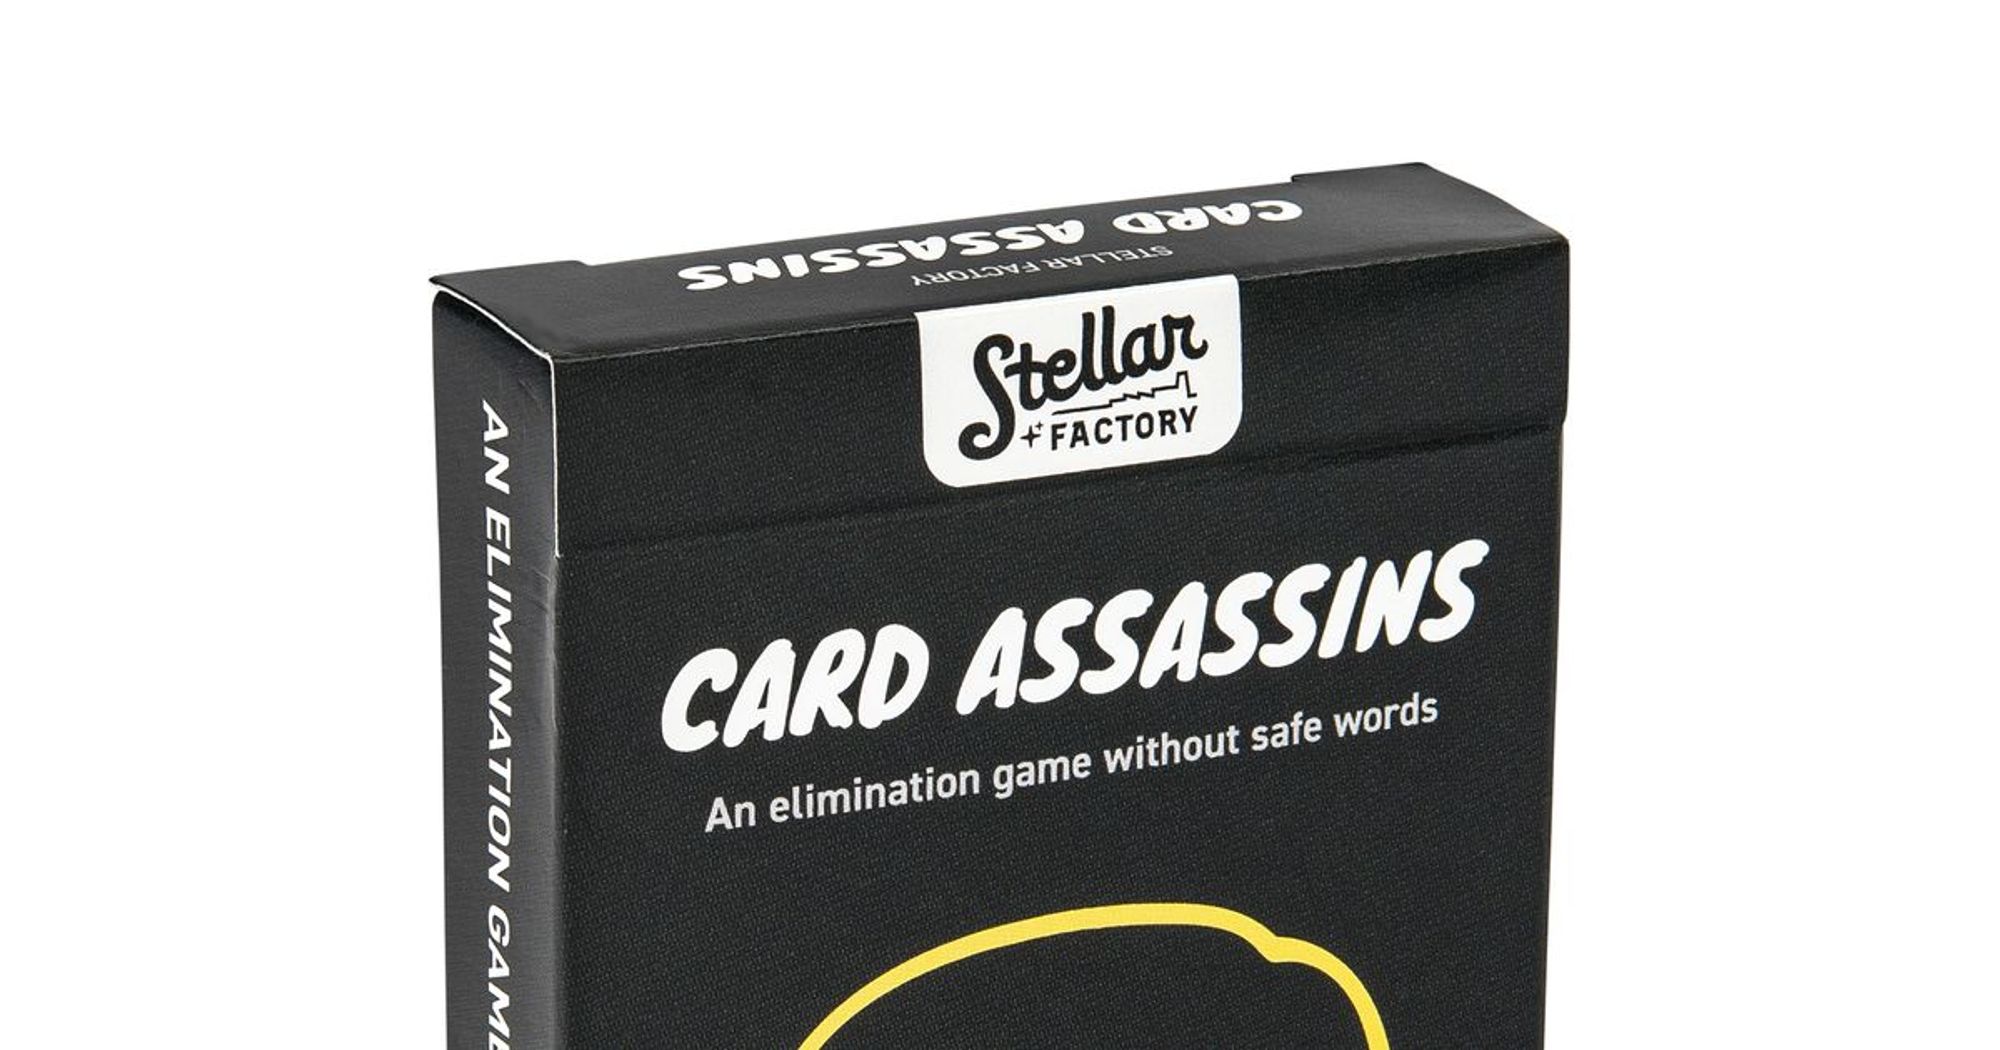 Card Assassins